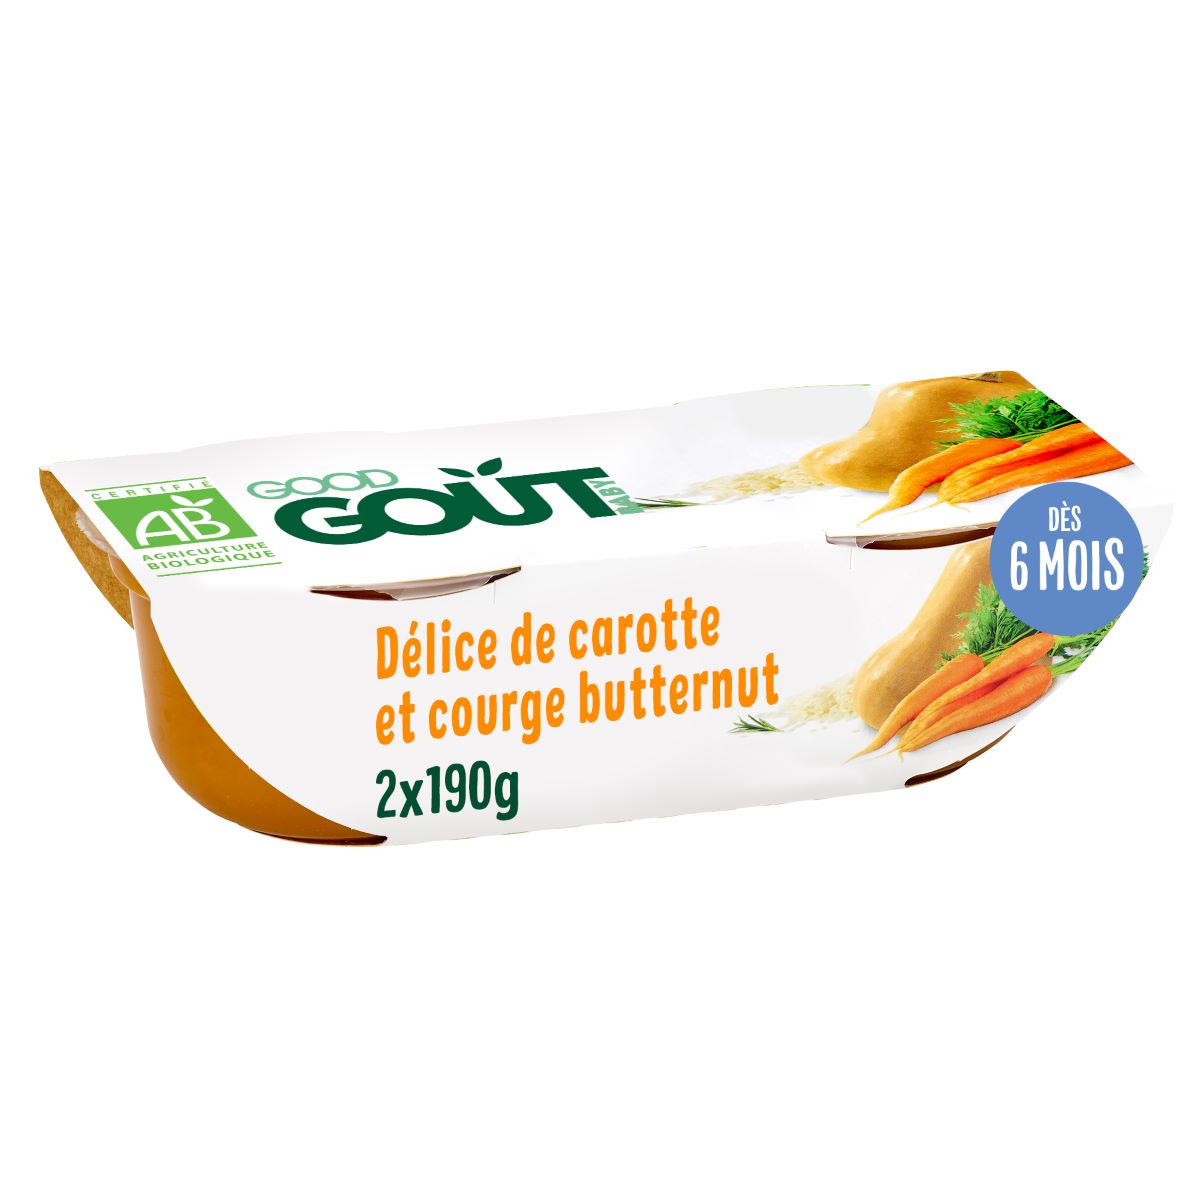 Good Gout - Délice de carotte et courge butternut 2x190g - Dès 6 mois